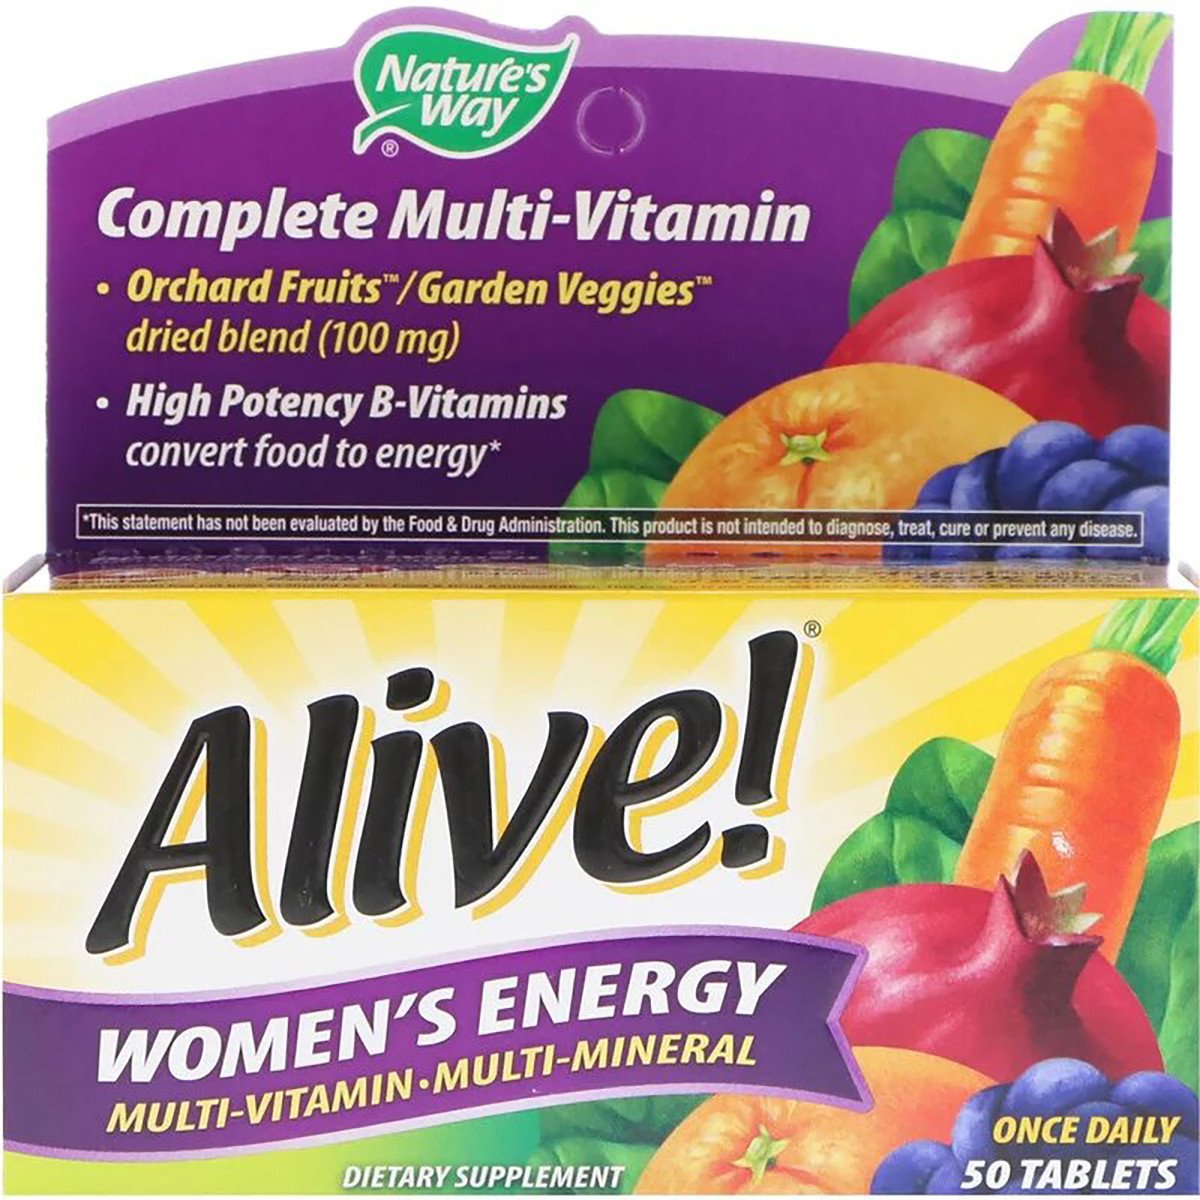 Мультивитамины для Женщин, Alive! Women's Energy, Natures Way, 50 таблеток,  мл, Nature's Way. Витамины и минералы. Поддержание здоровья Укрепление иммунитета 